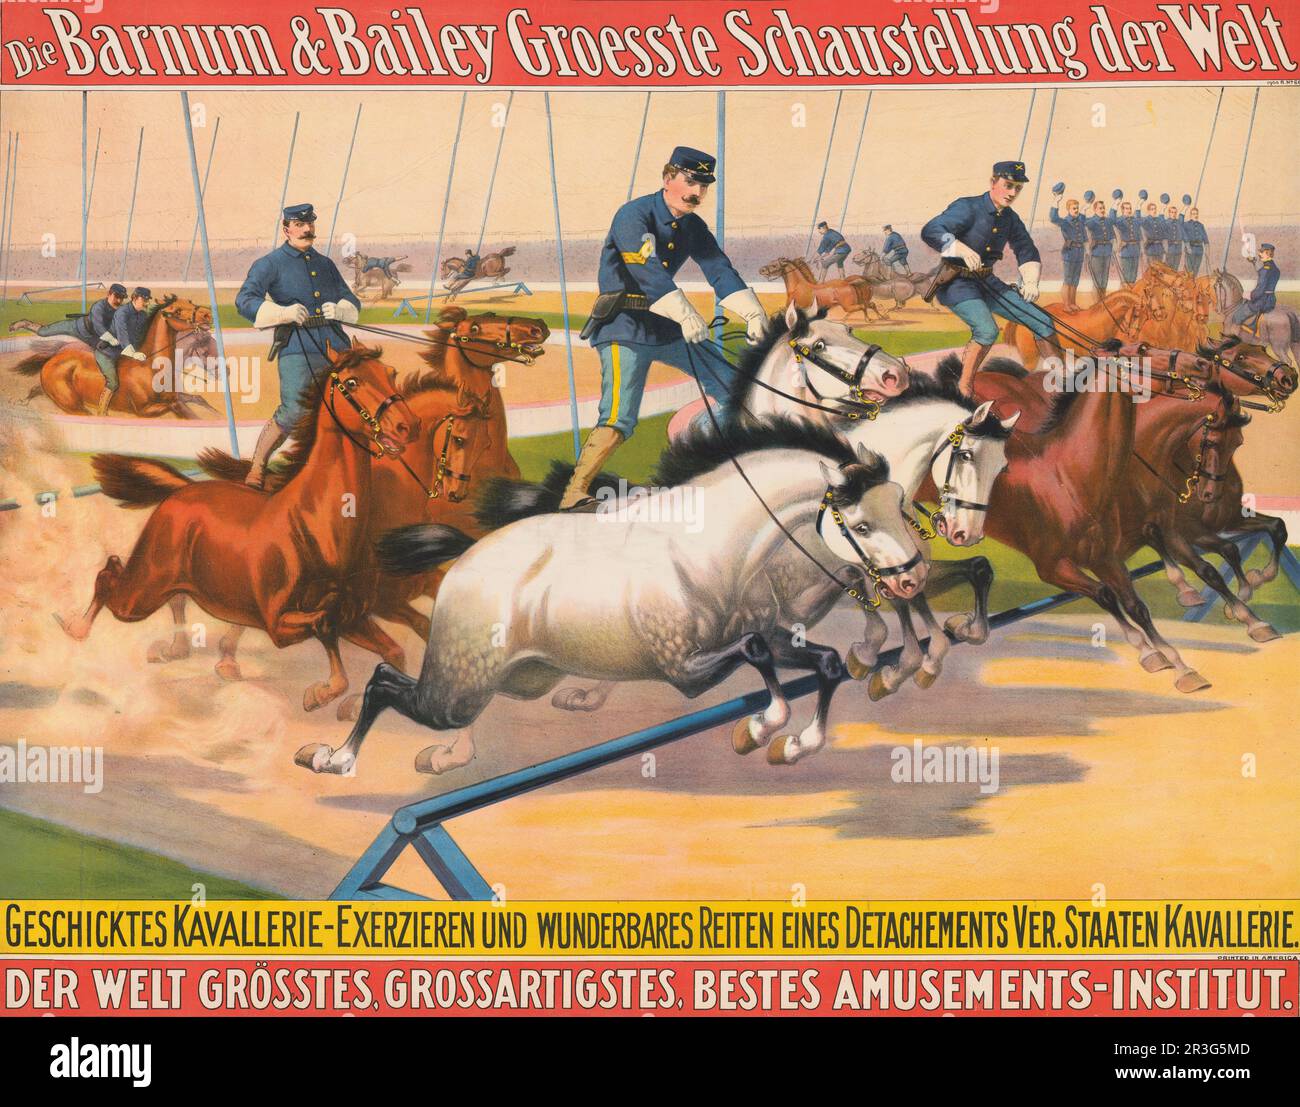 Affiche de cirque allemande vintage Barnum & Bailey, représentant des hommes en uniformes militaires qui font la course autour d'un circuit, vers 1900. Banque D'Images